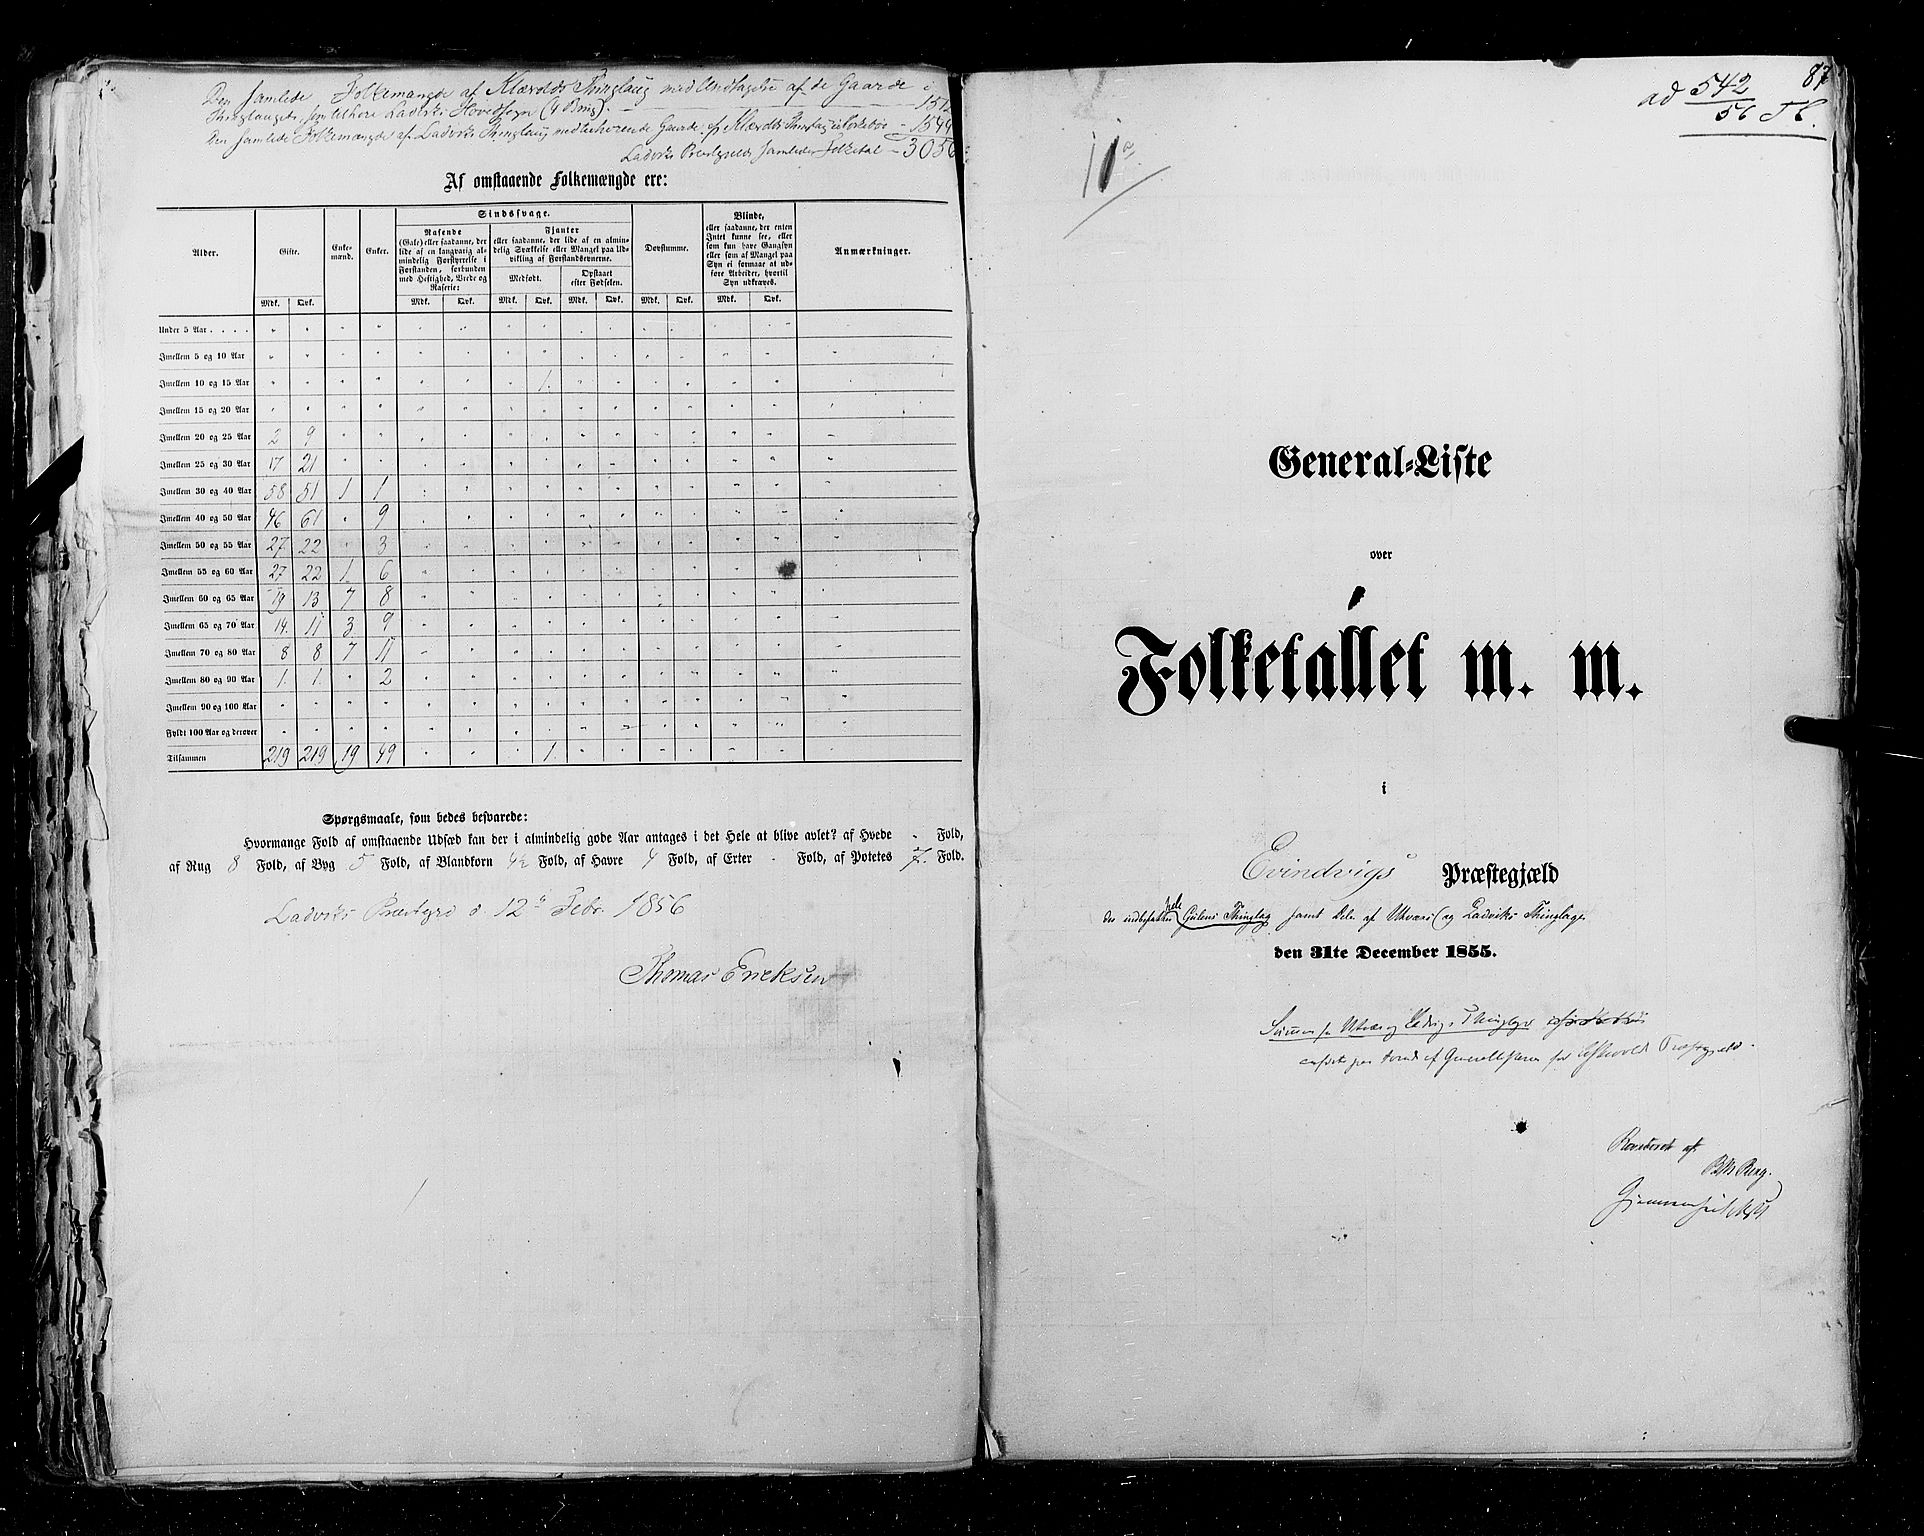 RA, Census 1855, vol. 5: Nordre Bergenhus amt, Romsdal amt og Søndre Trondhjem amt, 1855, p. 87